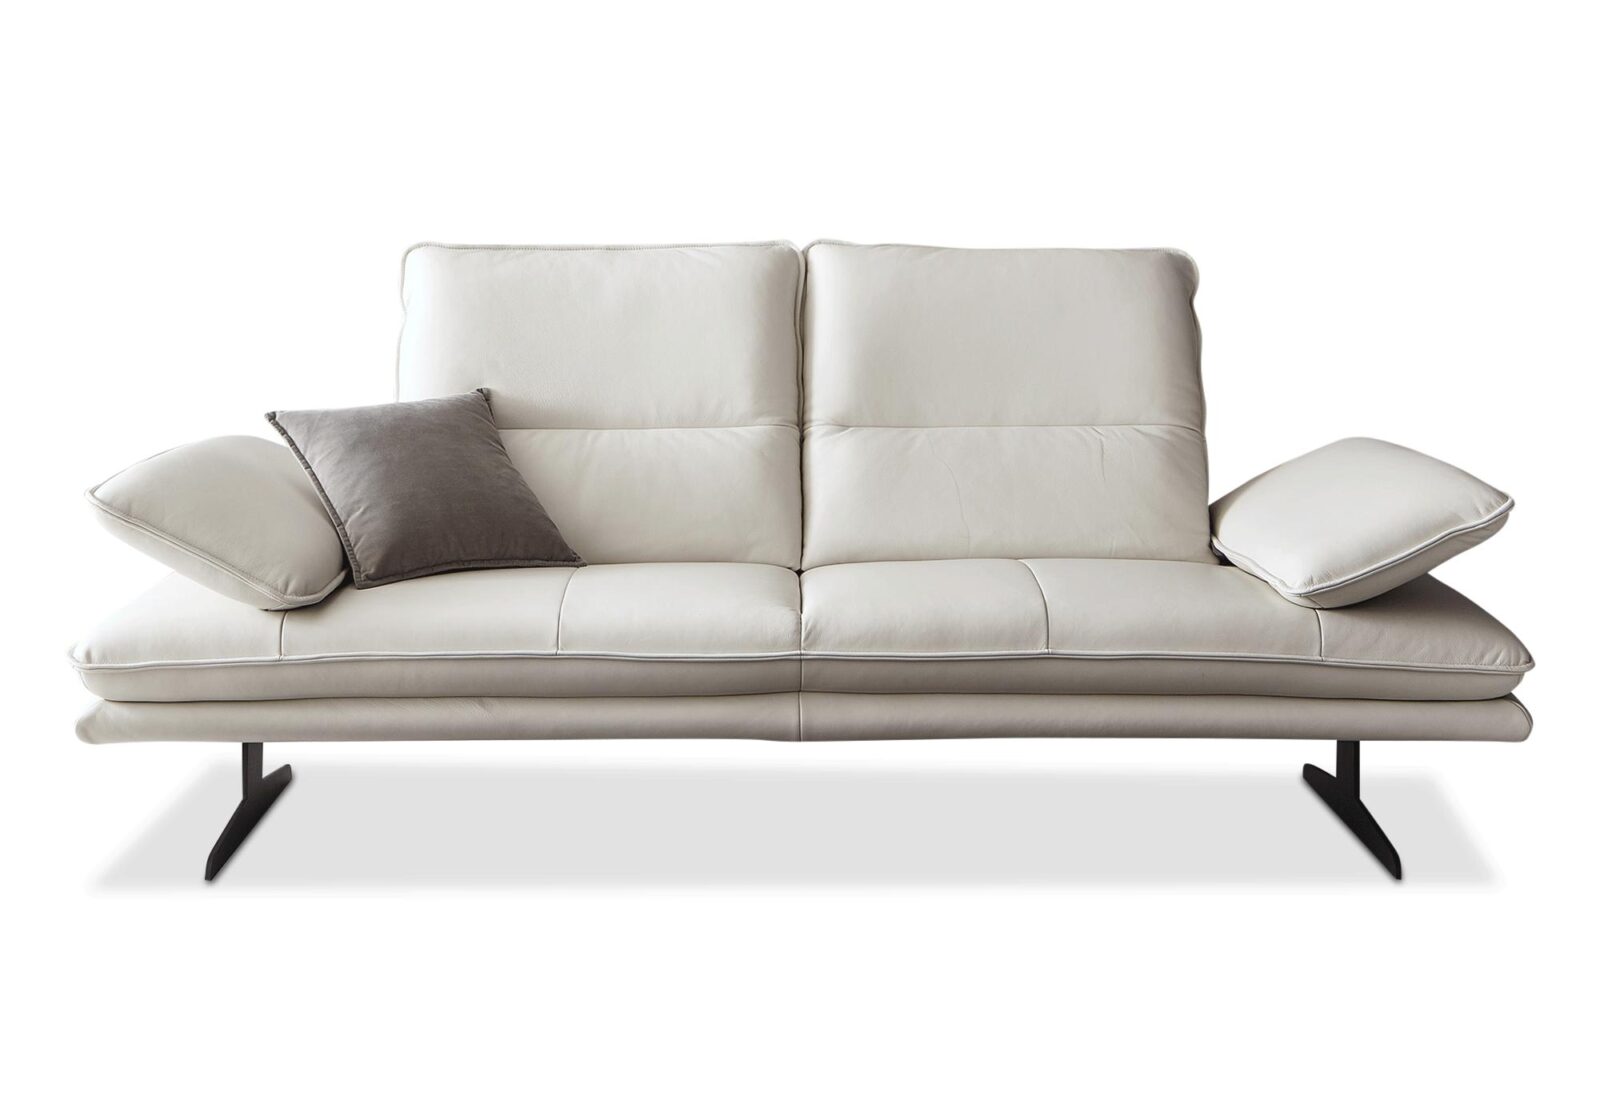 2.5 Sofa Gillet mit verstellbaren Armlehnen. Bezug: Leder. Farbe: Eisgrau. Erhältlich bei Möbel Gallati.